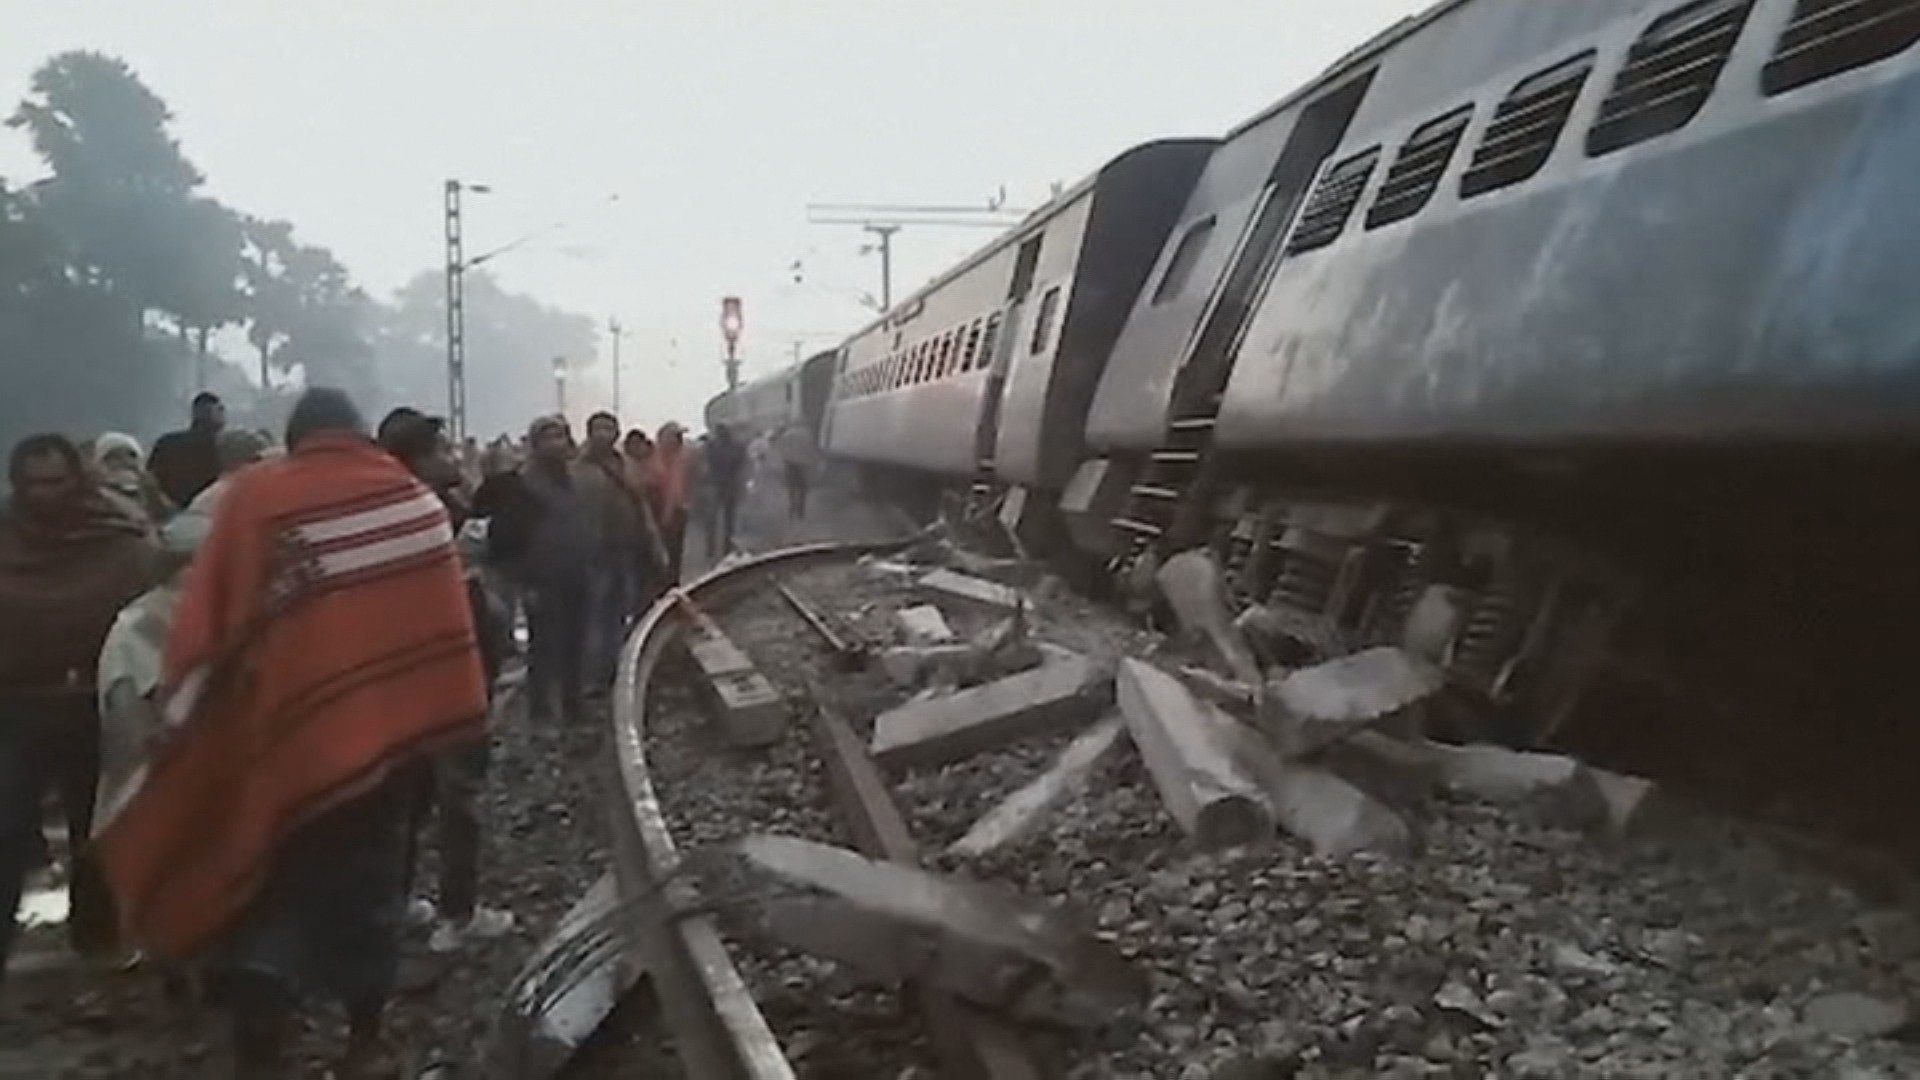 Сошедшая с рельсов дорам. Железнодорожная катастрофа в Бихаре (Bihar) – Индия, 1981 год. Крушение поезда в штате Бихар.